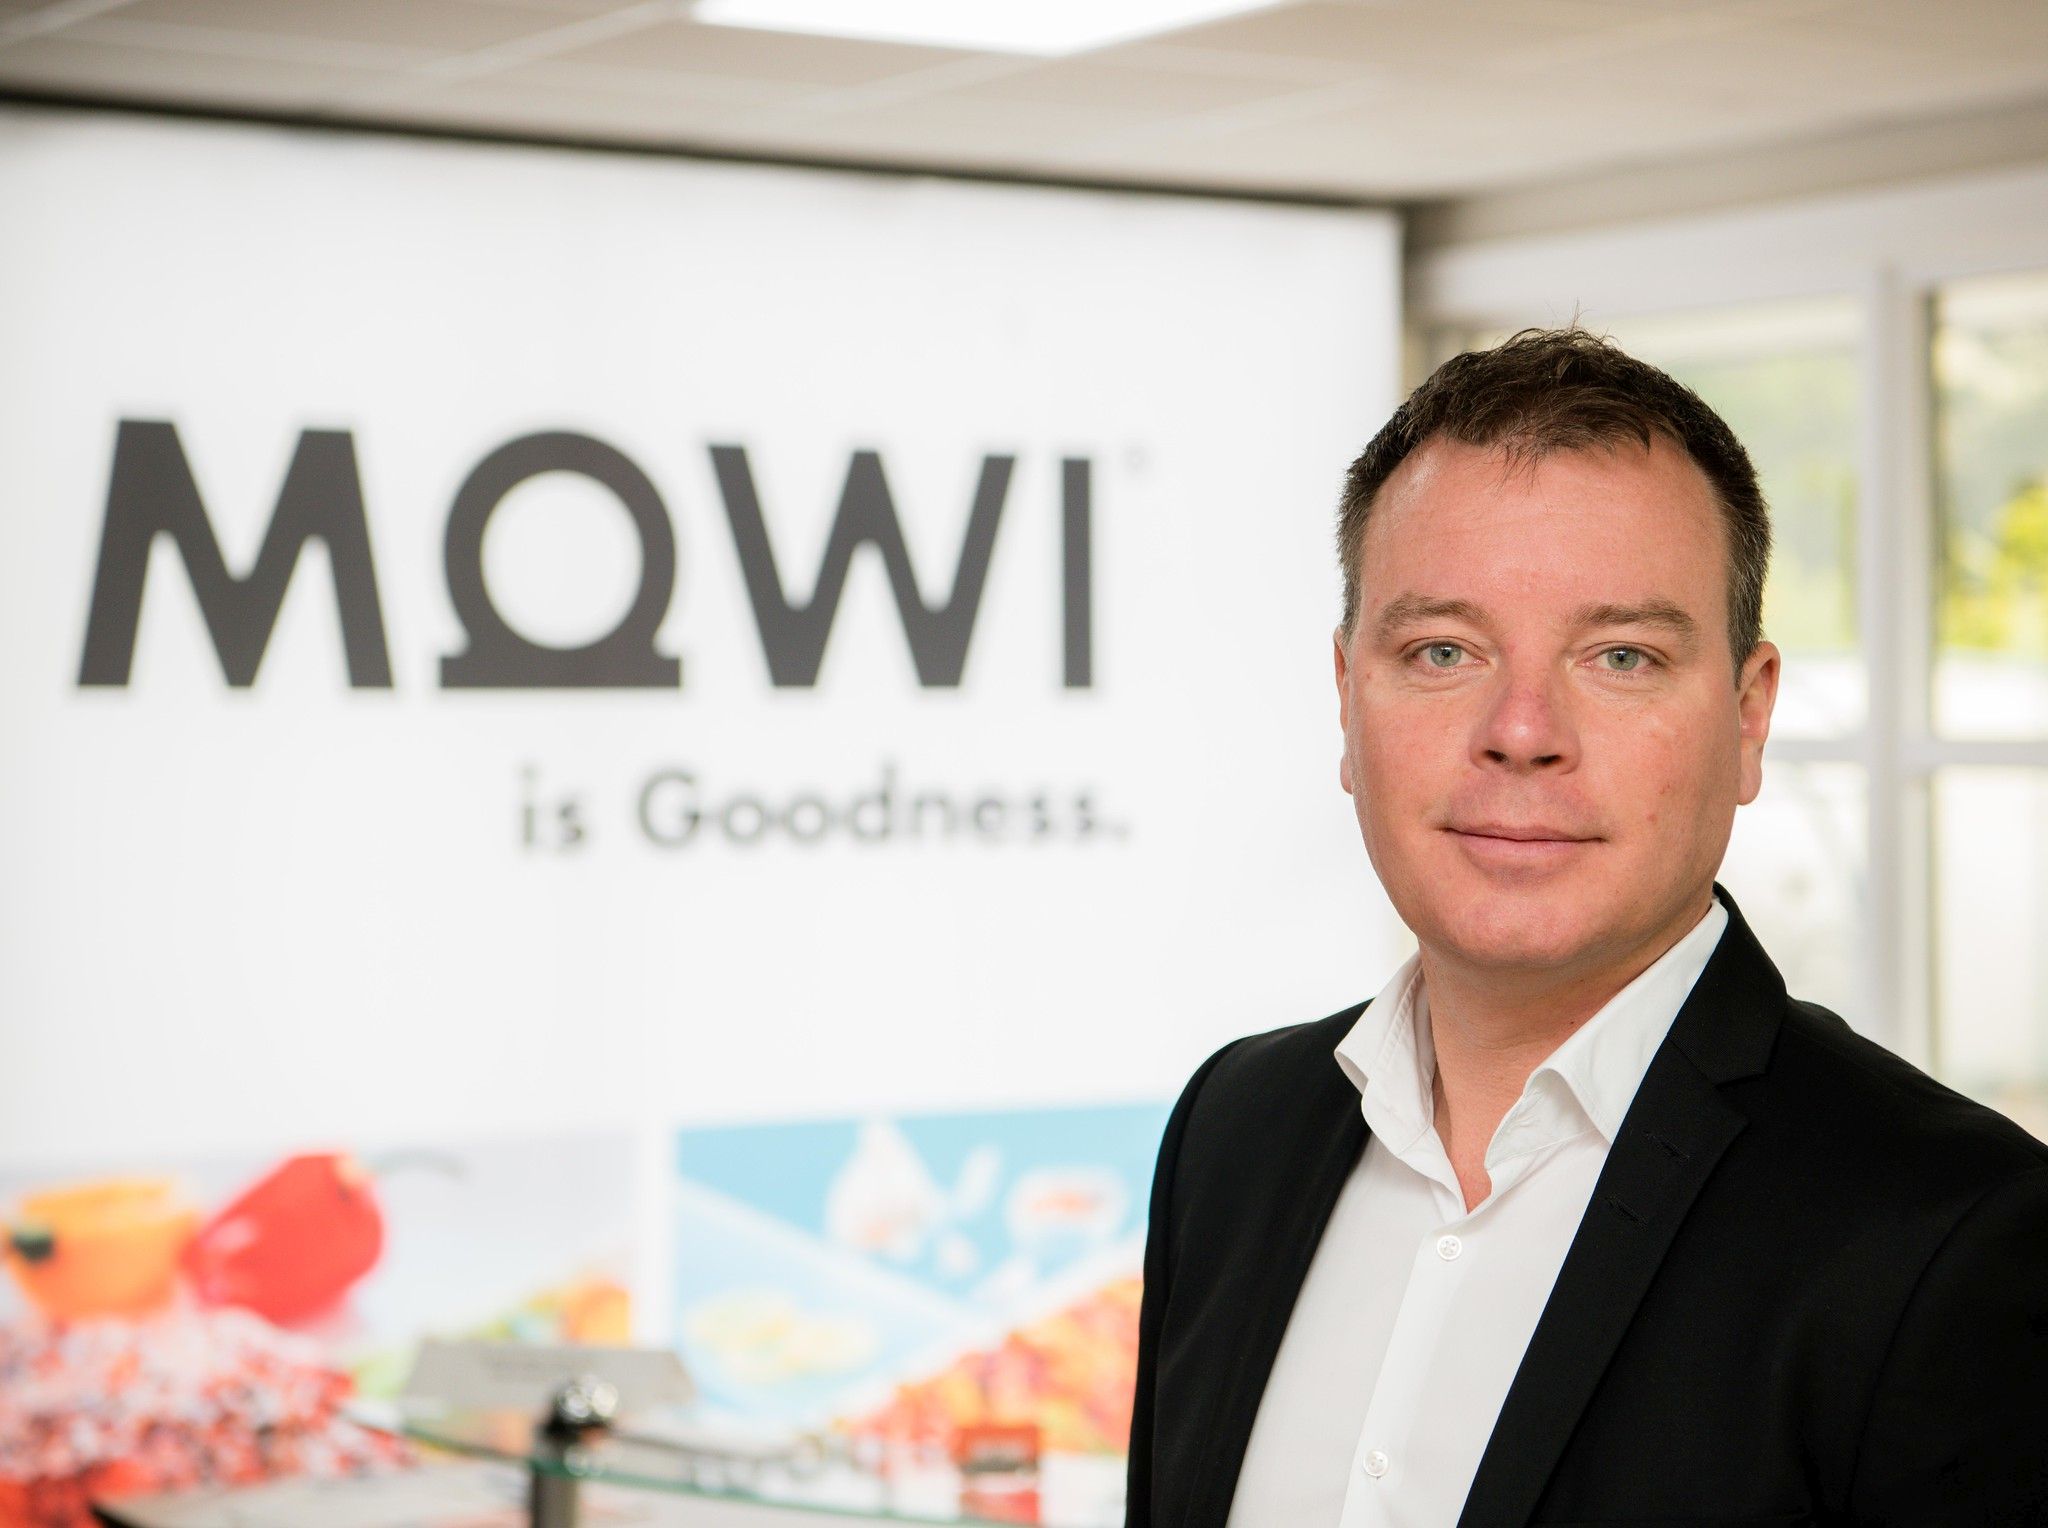 Mowi Scotland managing director Ben Hadfield